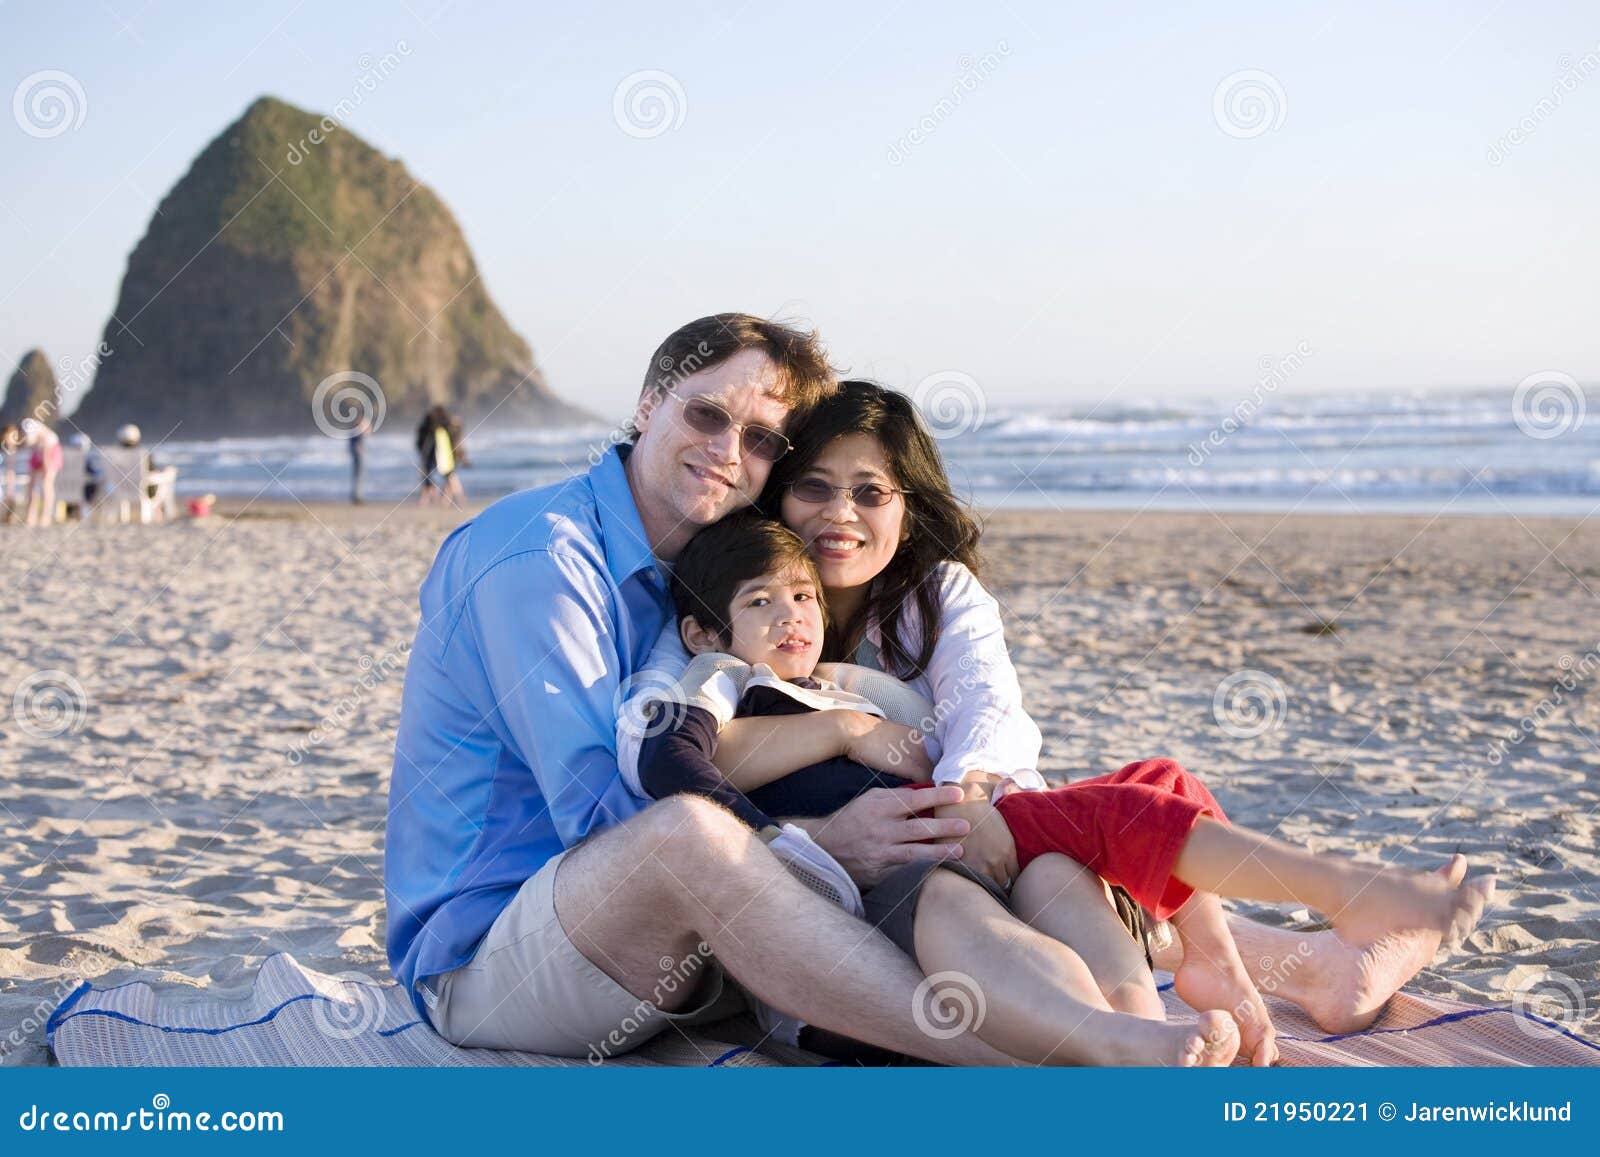 Piccola famiglia con il ragazzo invalido che si siede alla spiaggia. Piccola famiglia con il ragazzino invalido che si siede alla spiaggia dall'oceano